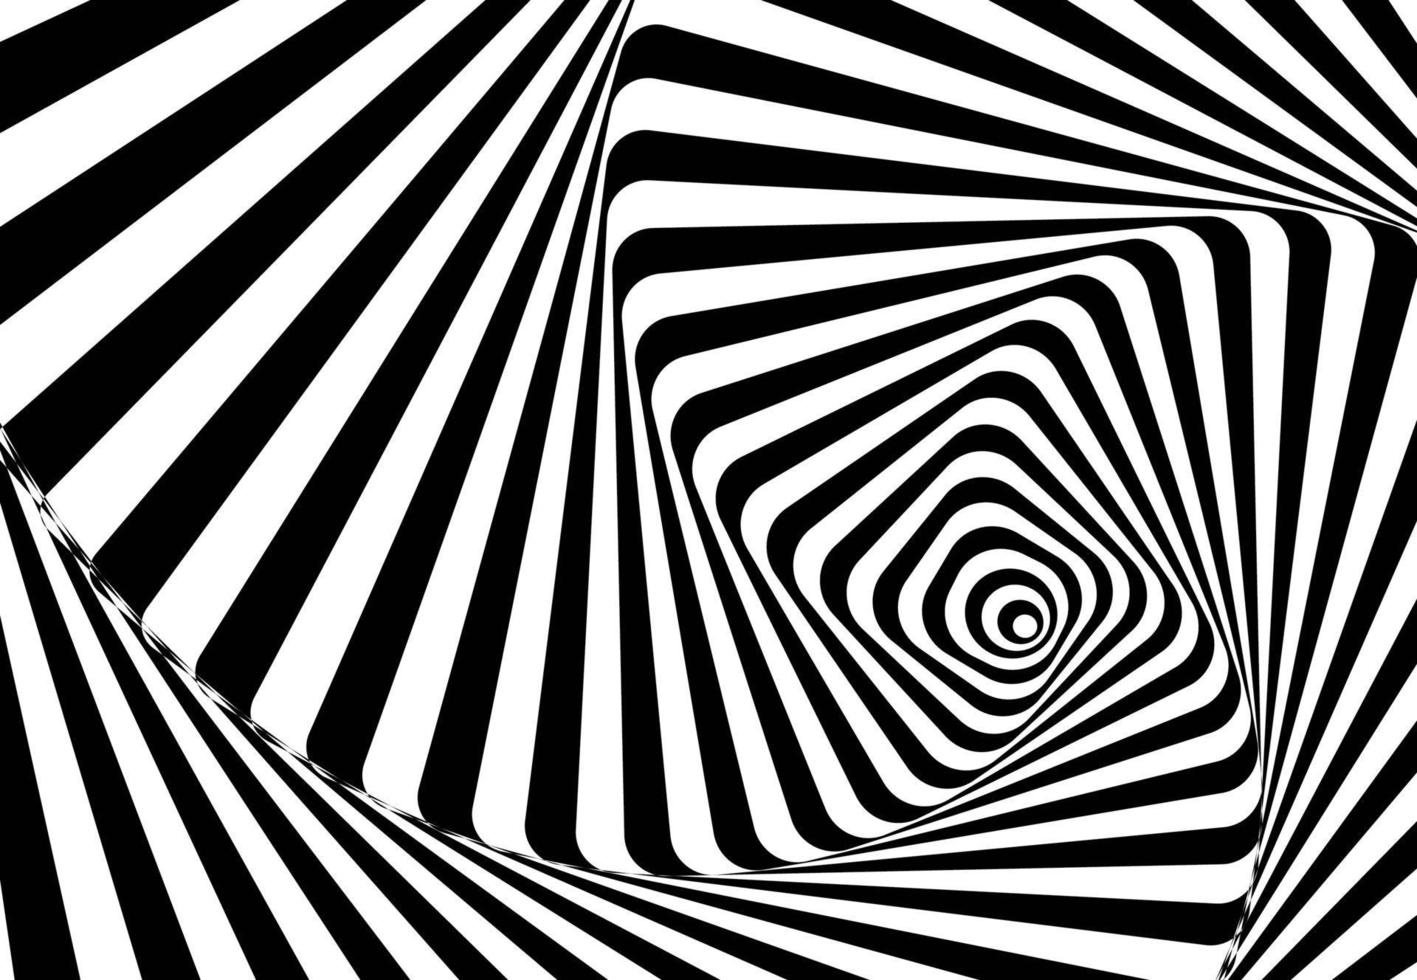 ilusión óptica de líneas onduladas abstractas. diseño de fondo geométrico. ilustración vectorial vector